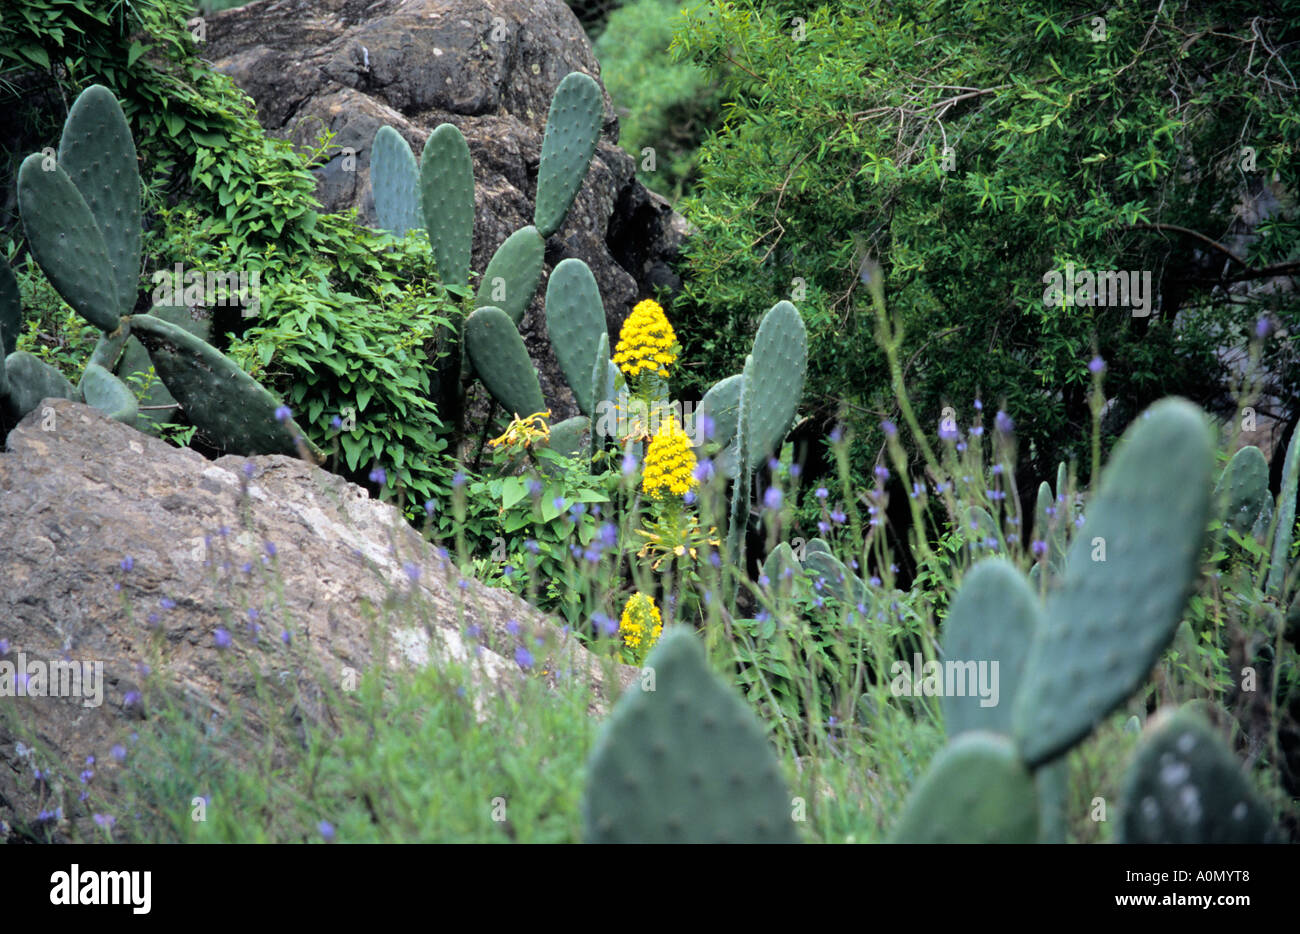 Figuiers de Barbarie Opuntia Aeonium undulatum poussent à l'état sauvage dans la région de Barranco del Infierno Tenerife Espagne Banque D'Images